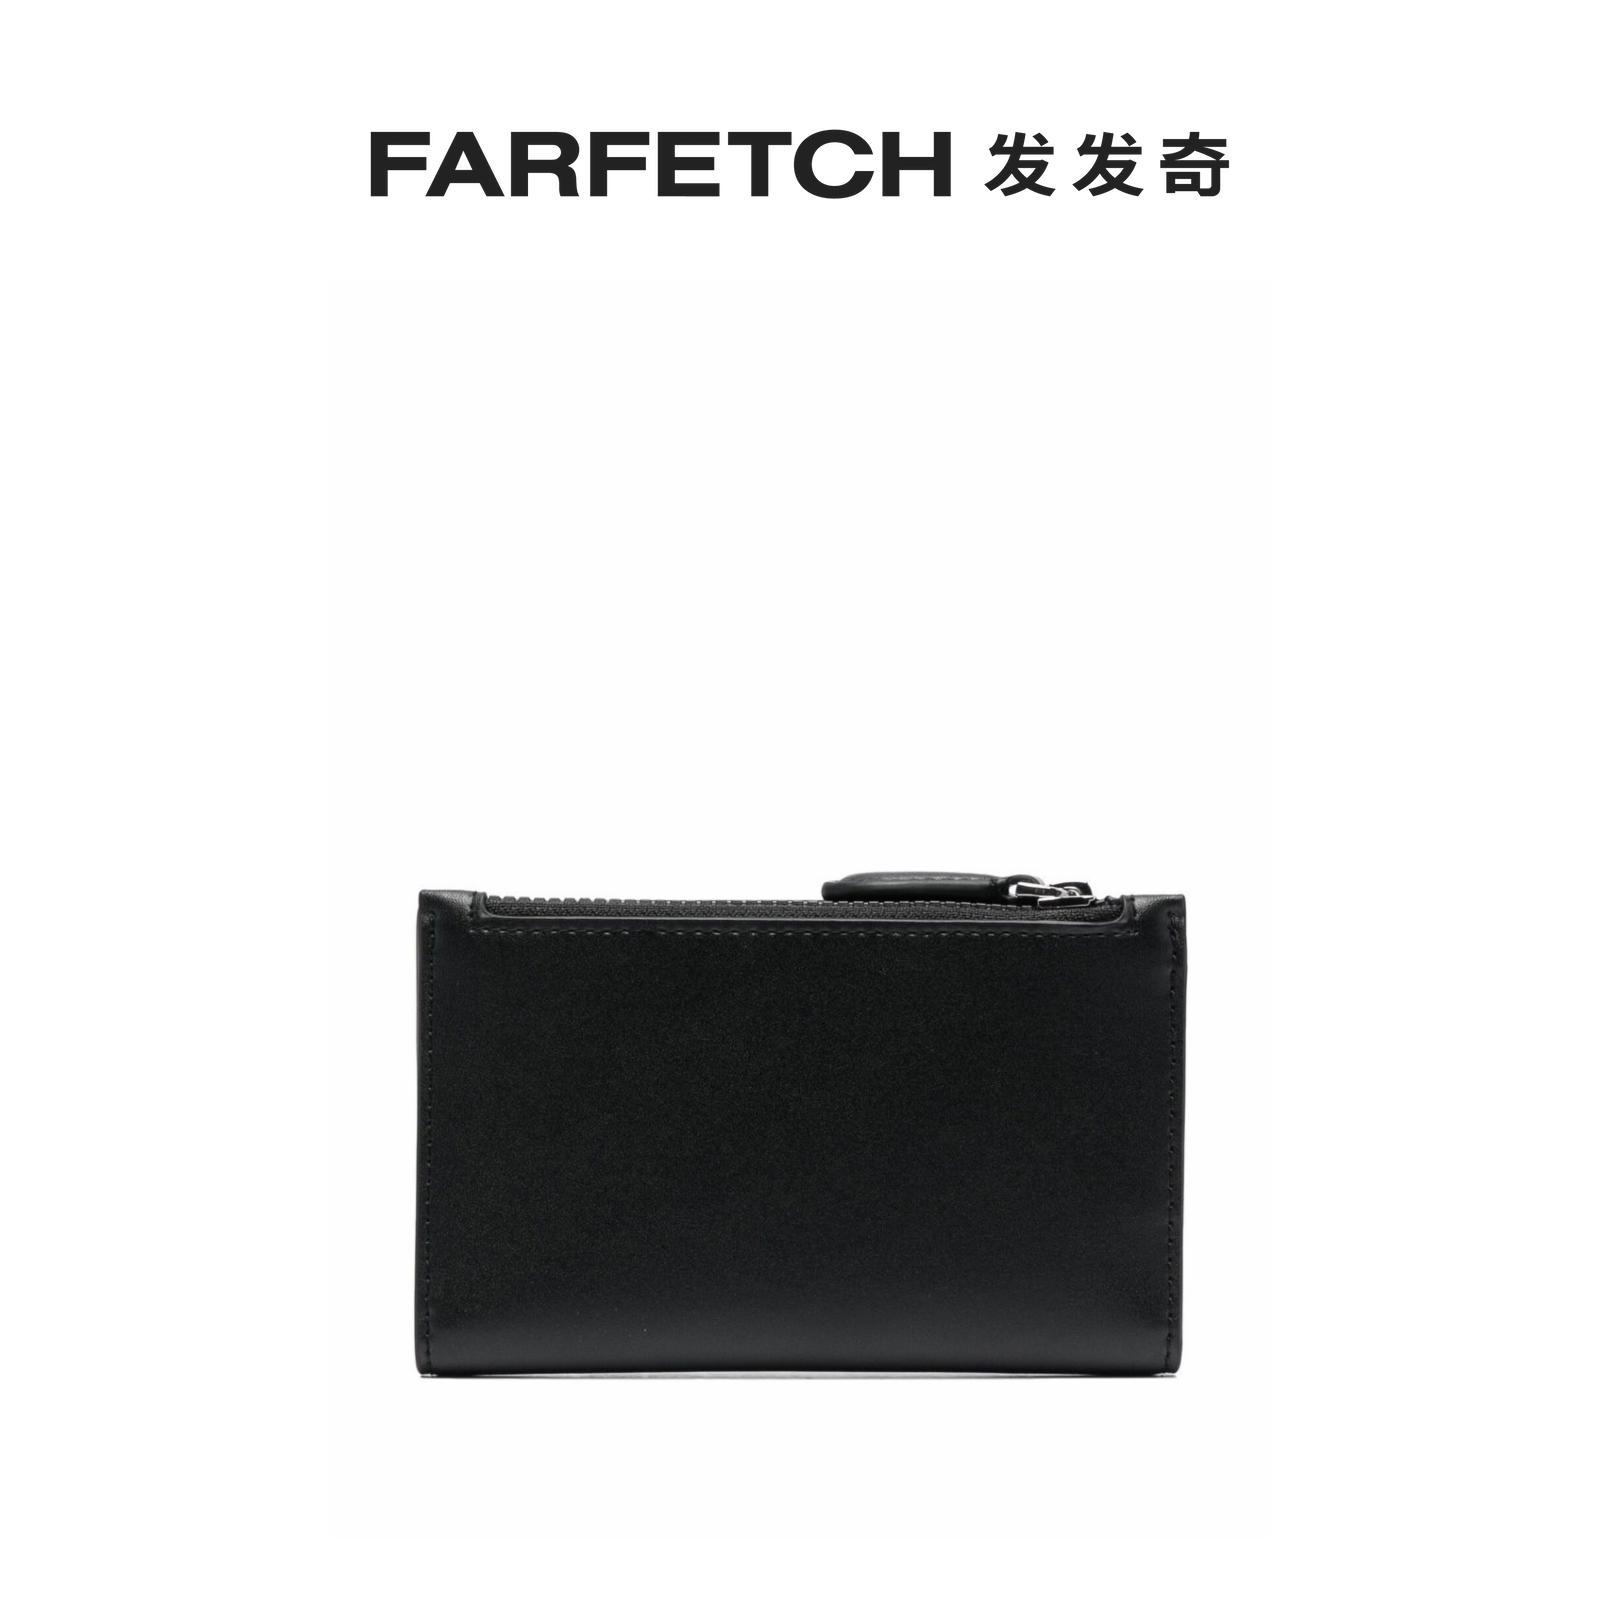 Karl Lagerfeld Wallets & Billfolds for Men - Shop Now on FARFETCH